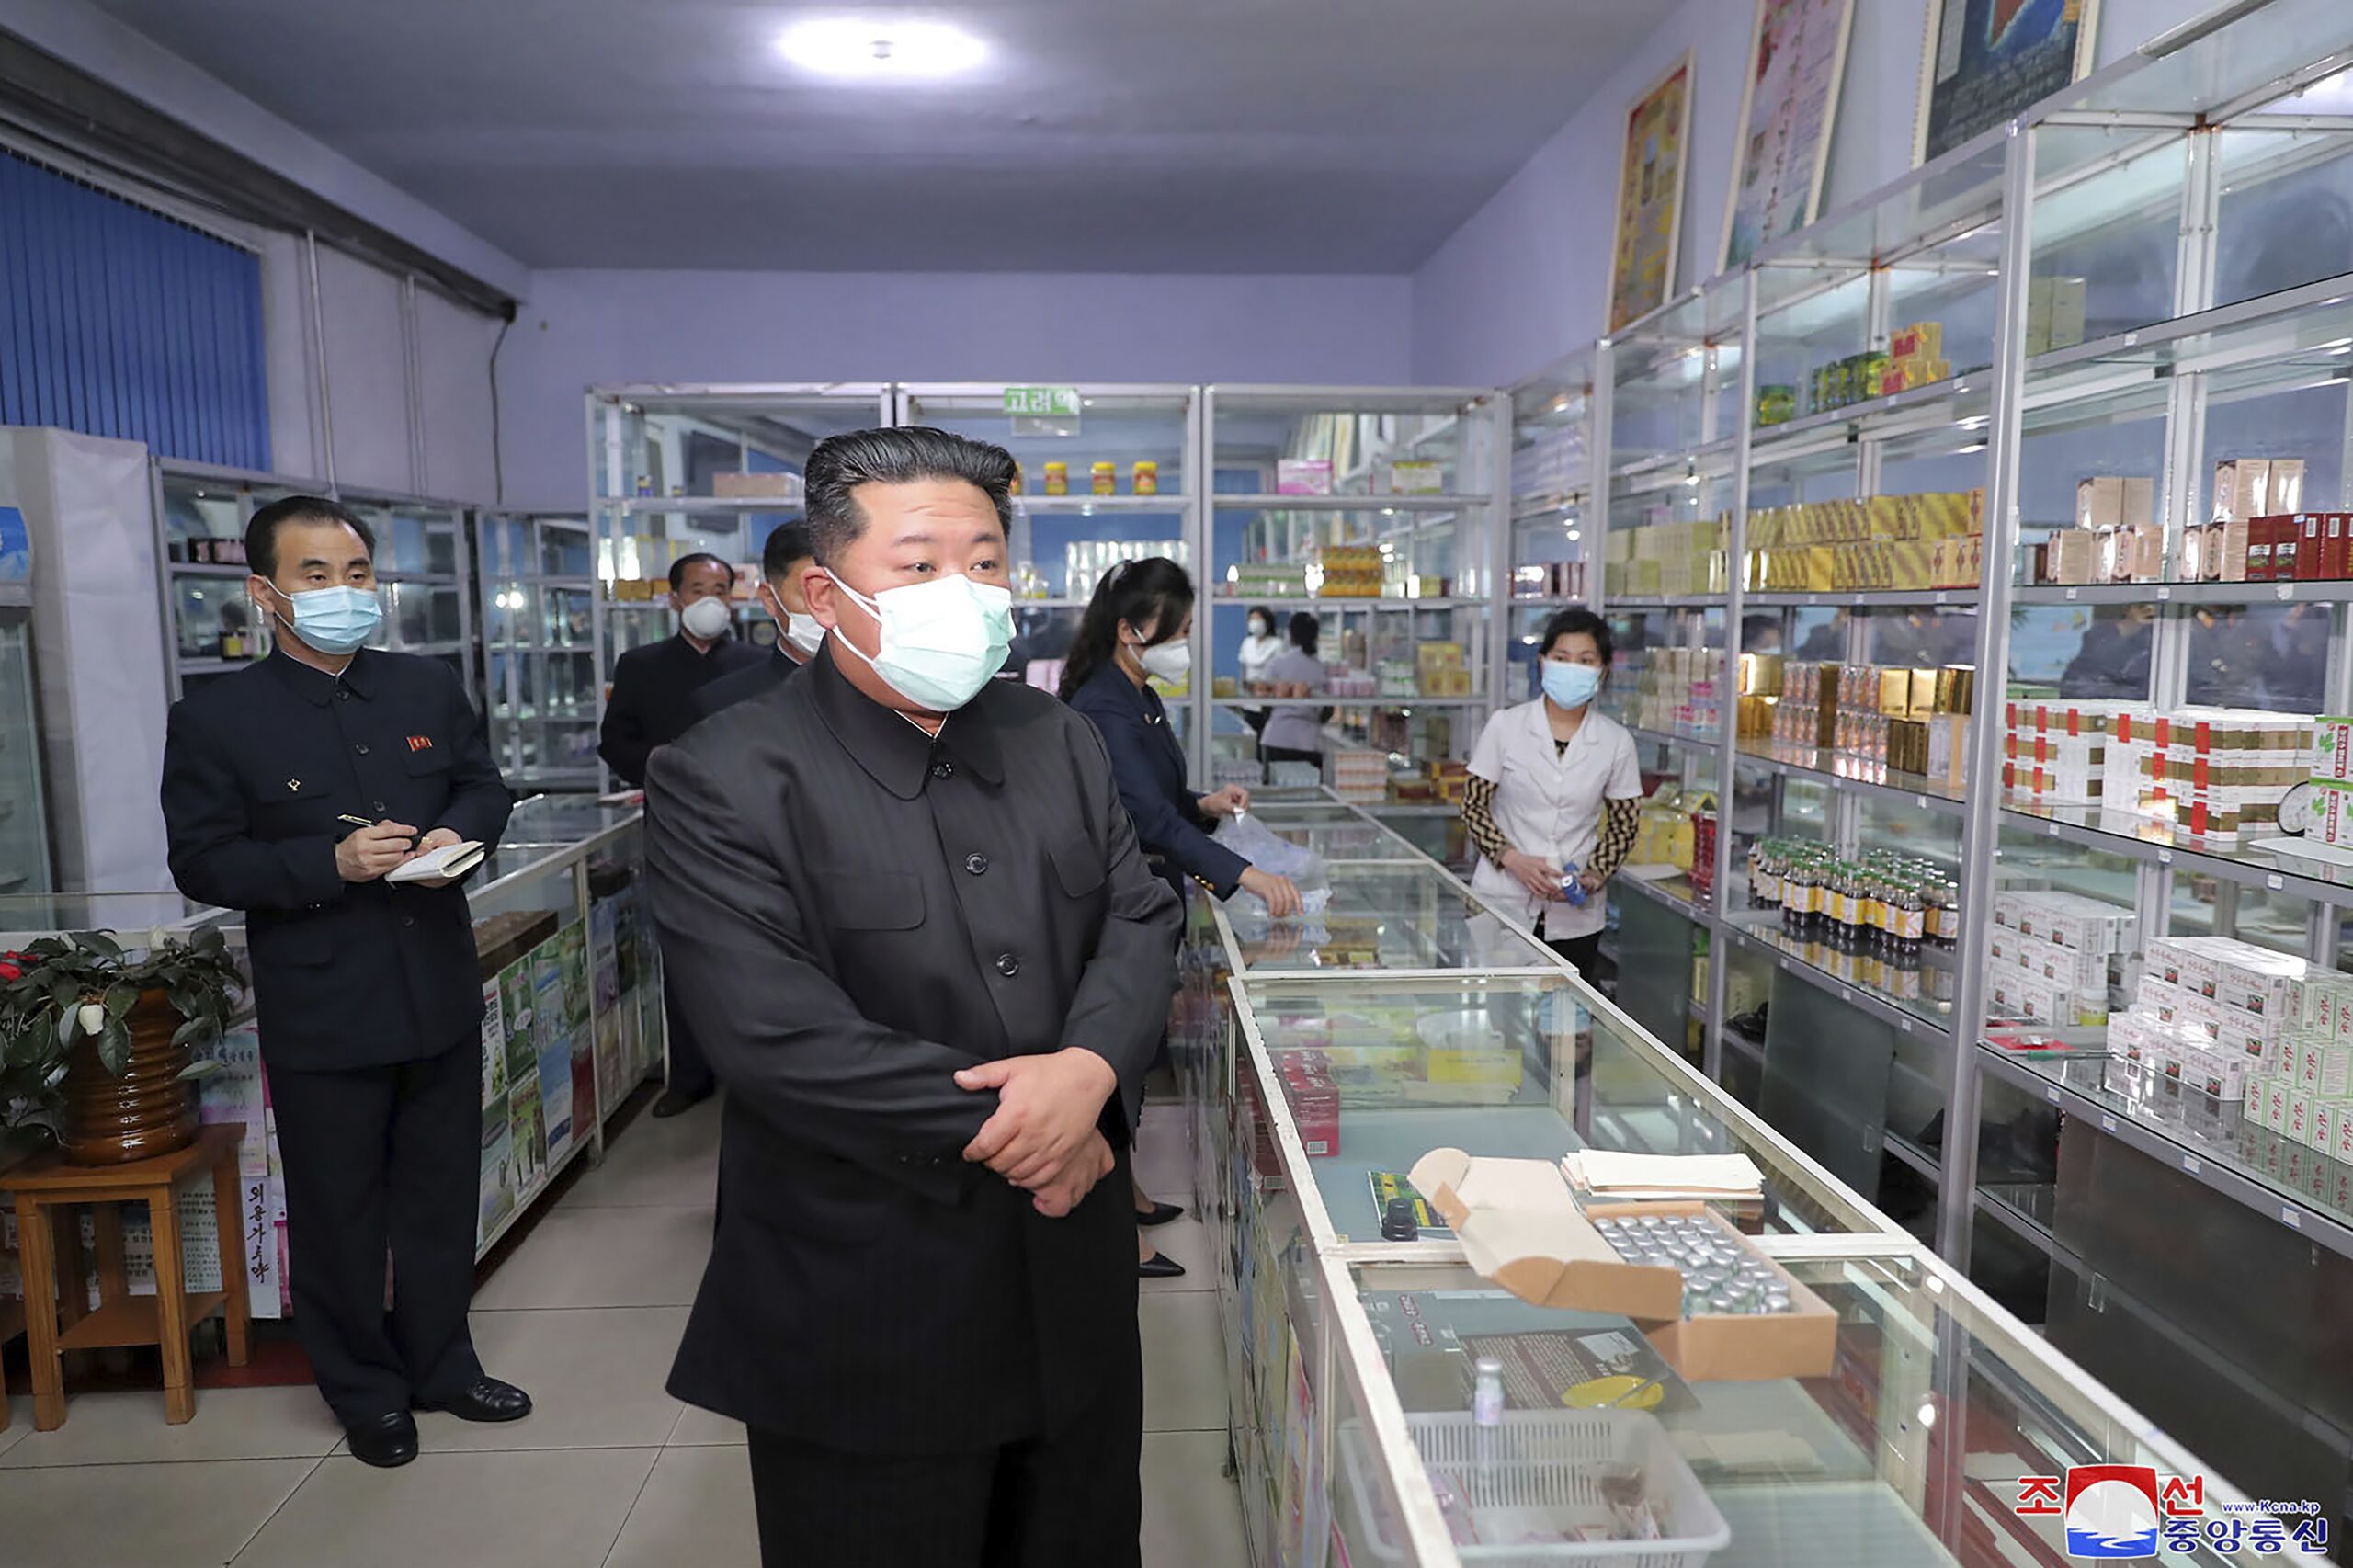 De Noord-Koreaanse leider Kim Jong-un bezoekt een apotheek in Pyongyang.